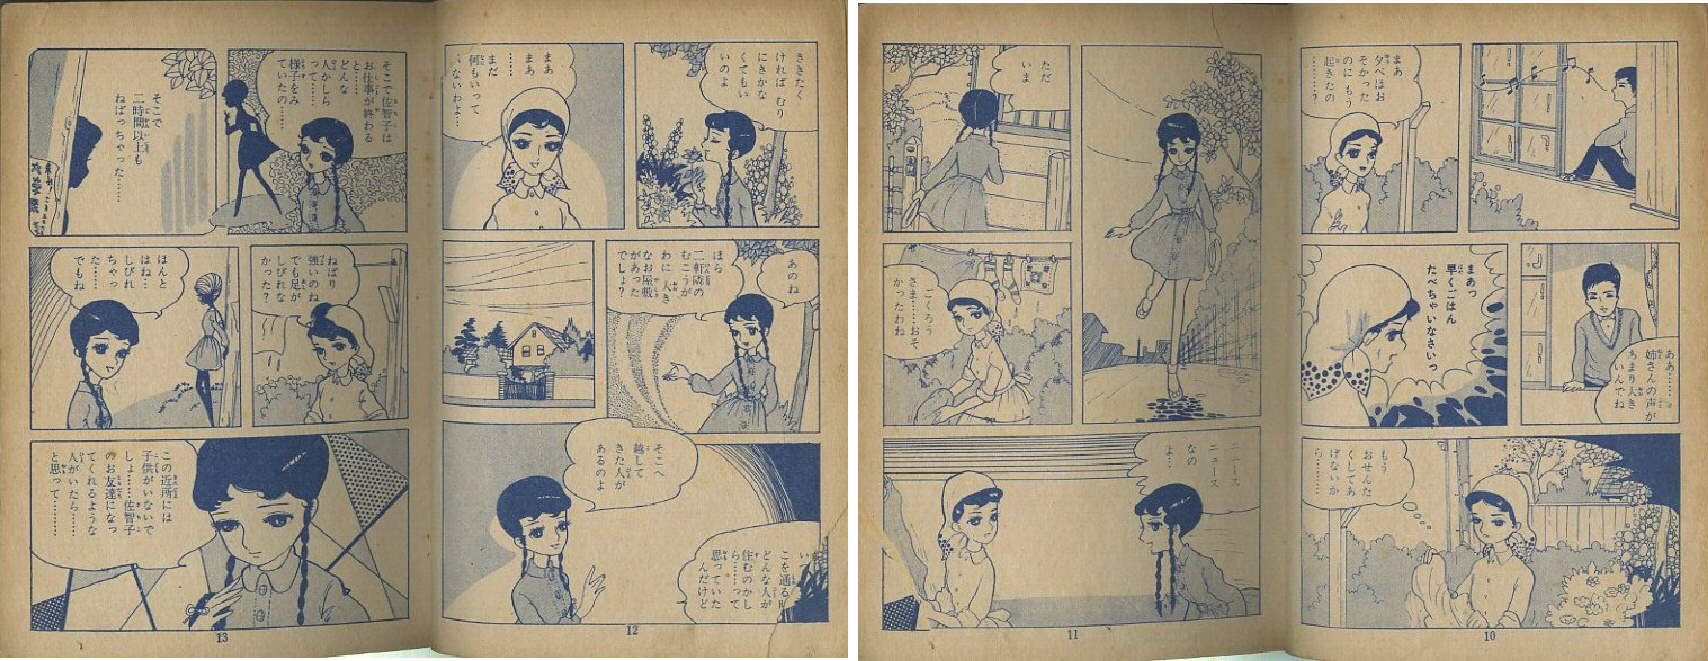 昭和30年代 悲しき日の友 細野みち子 東京漫画出版 まつざきあけみのブログ